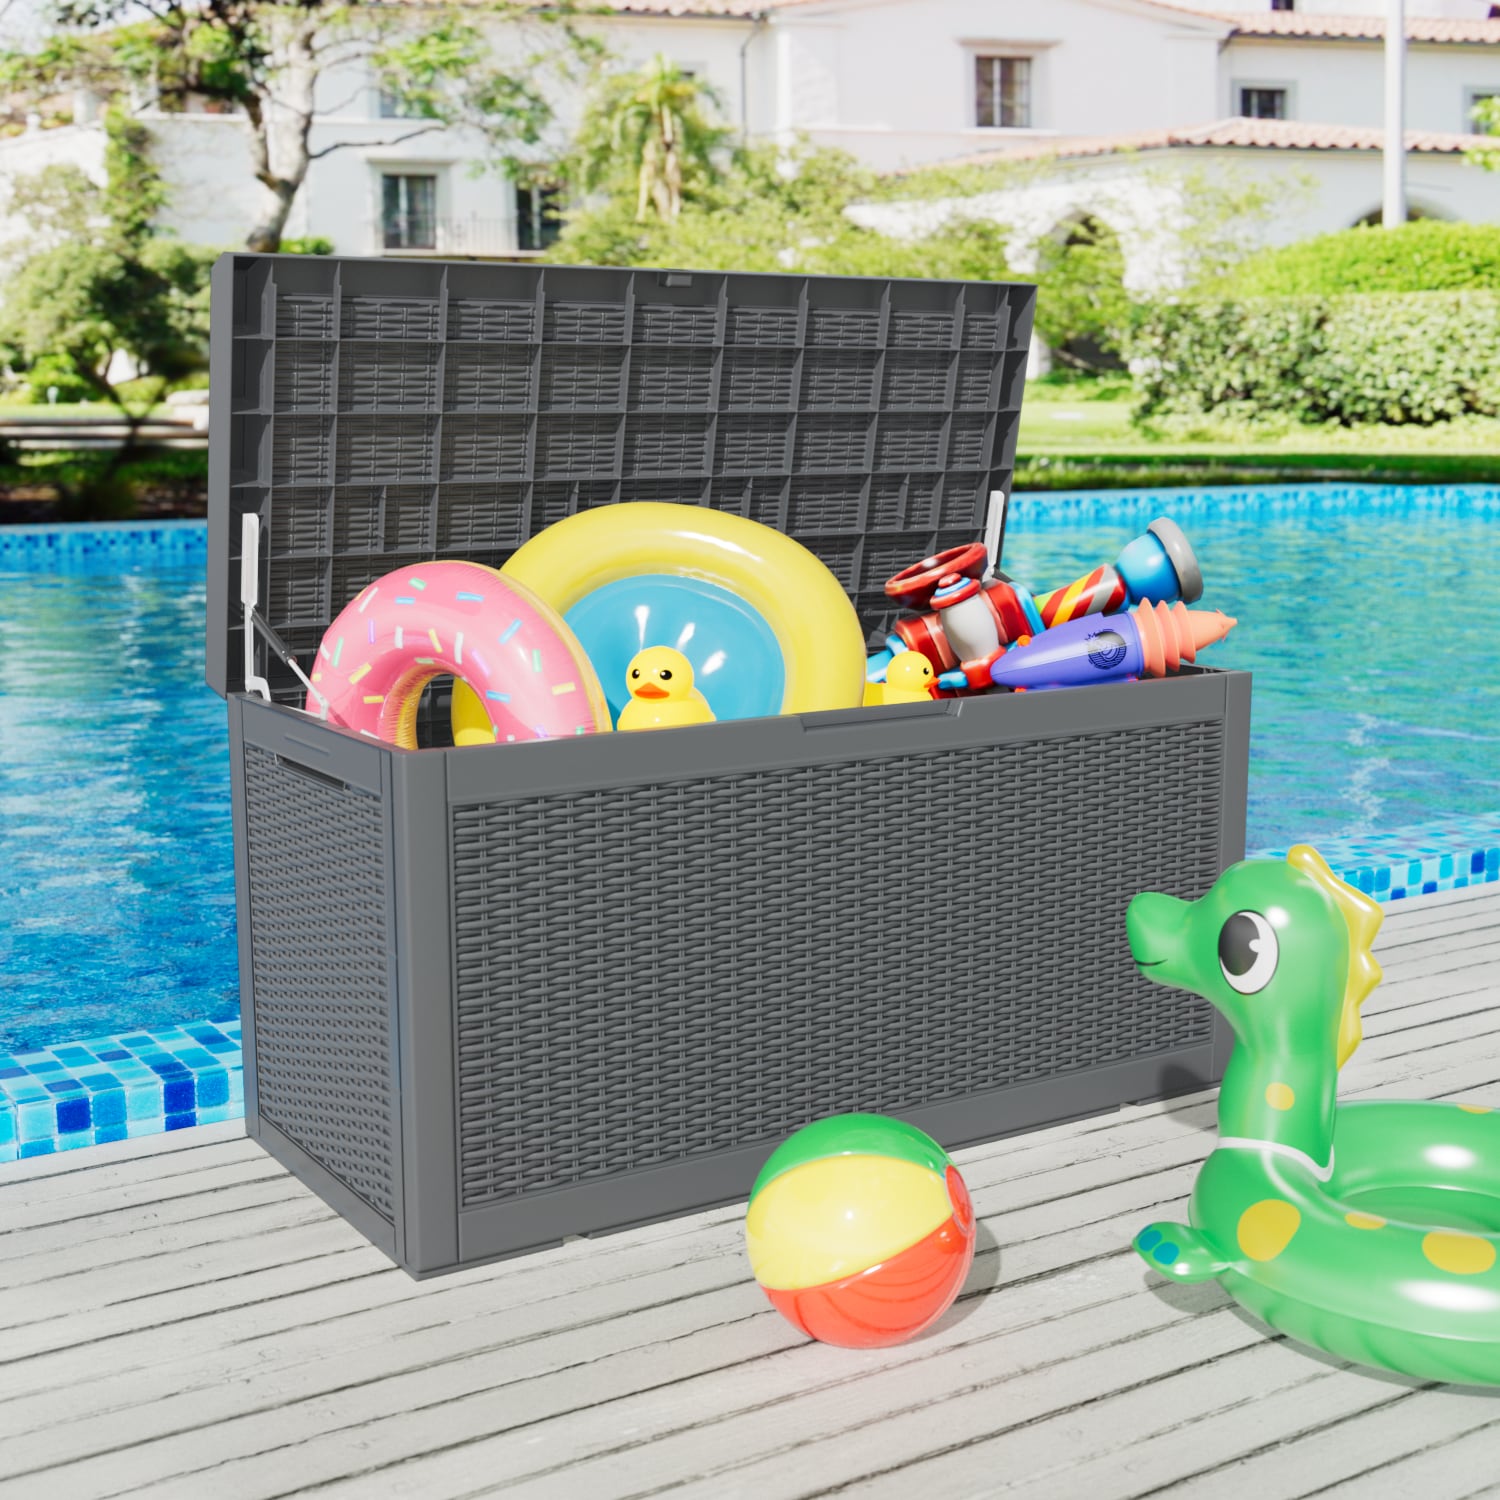 Kids Toy Outdoor Storage Box